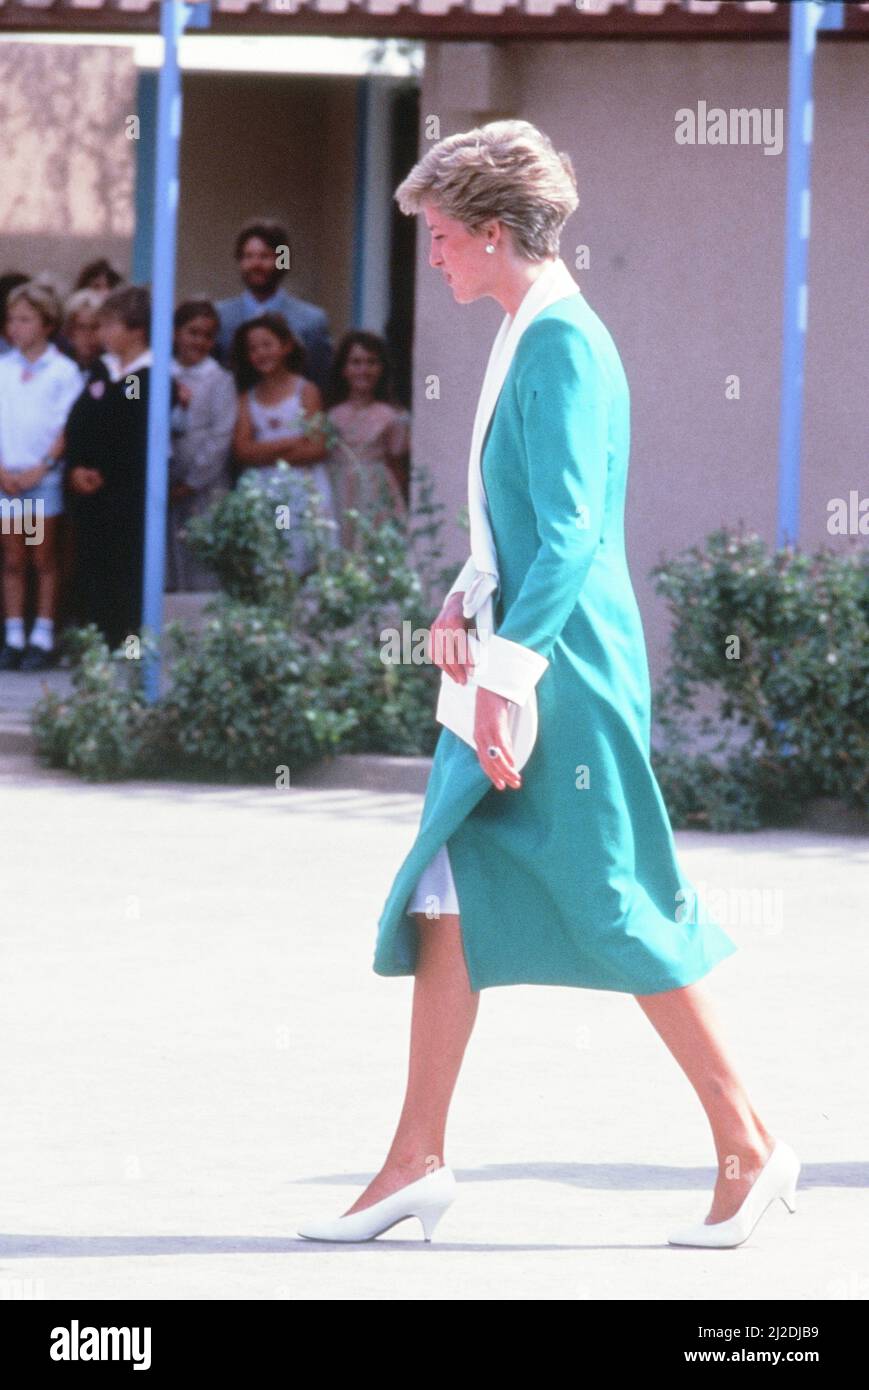 Prince et Princesse de Galles, excursion au Moyen-Orient, novembre 1986. Notre photo montre ... La princesse Diana à l'école anglophone de Doha, Qatar, samedi 15th novembre 1986. Banque D'Images